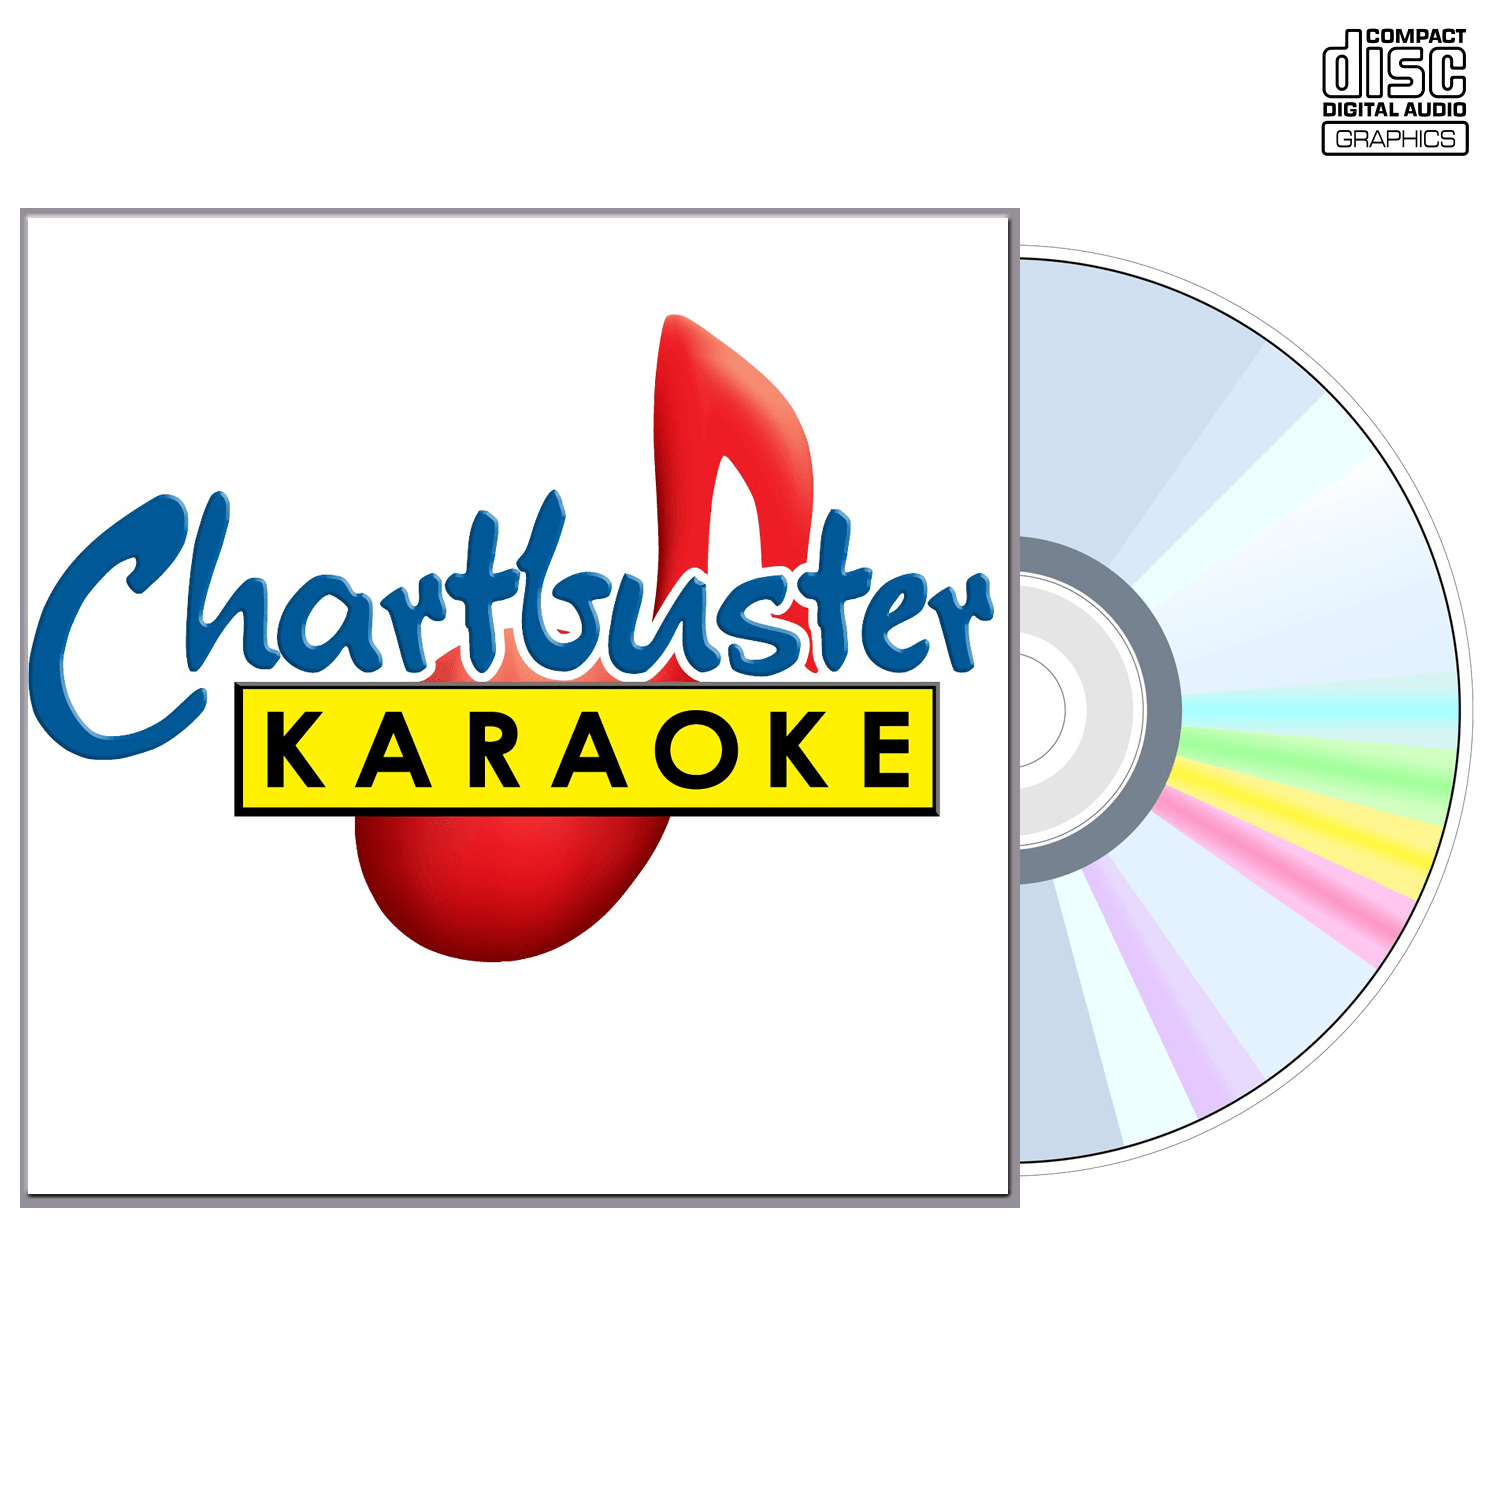 Evanescence - CD+G - Chartbuster Karaoke - Karaoke Home Entertainment